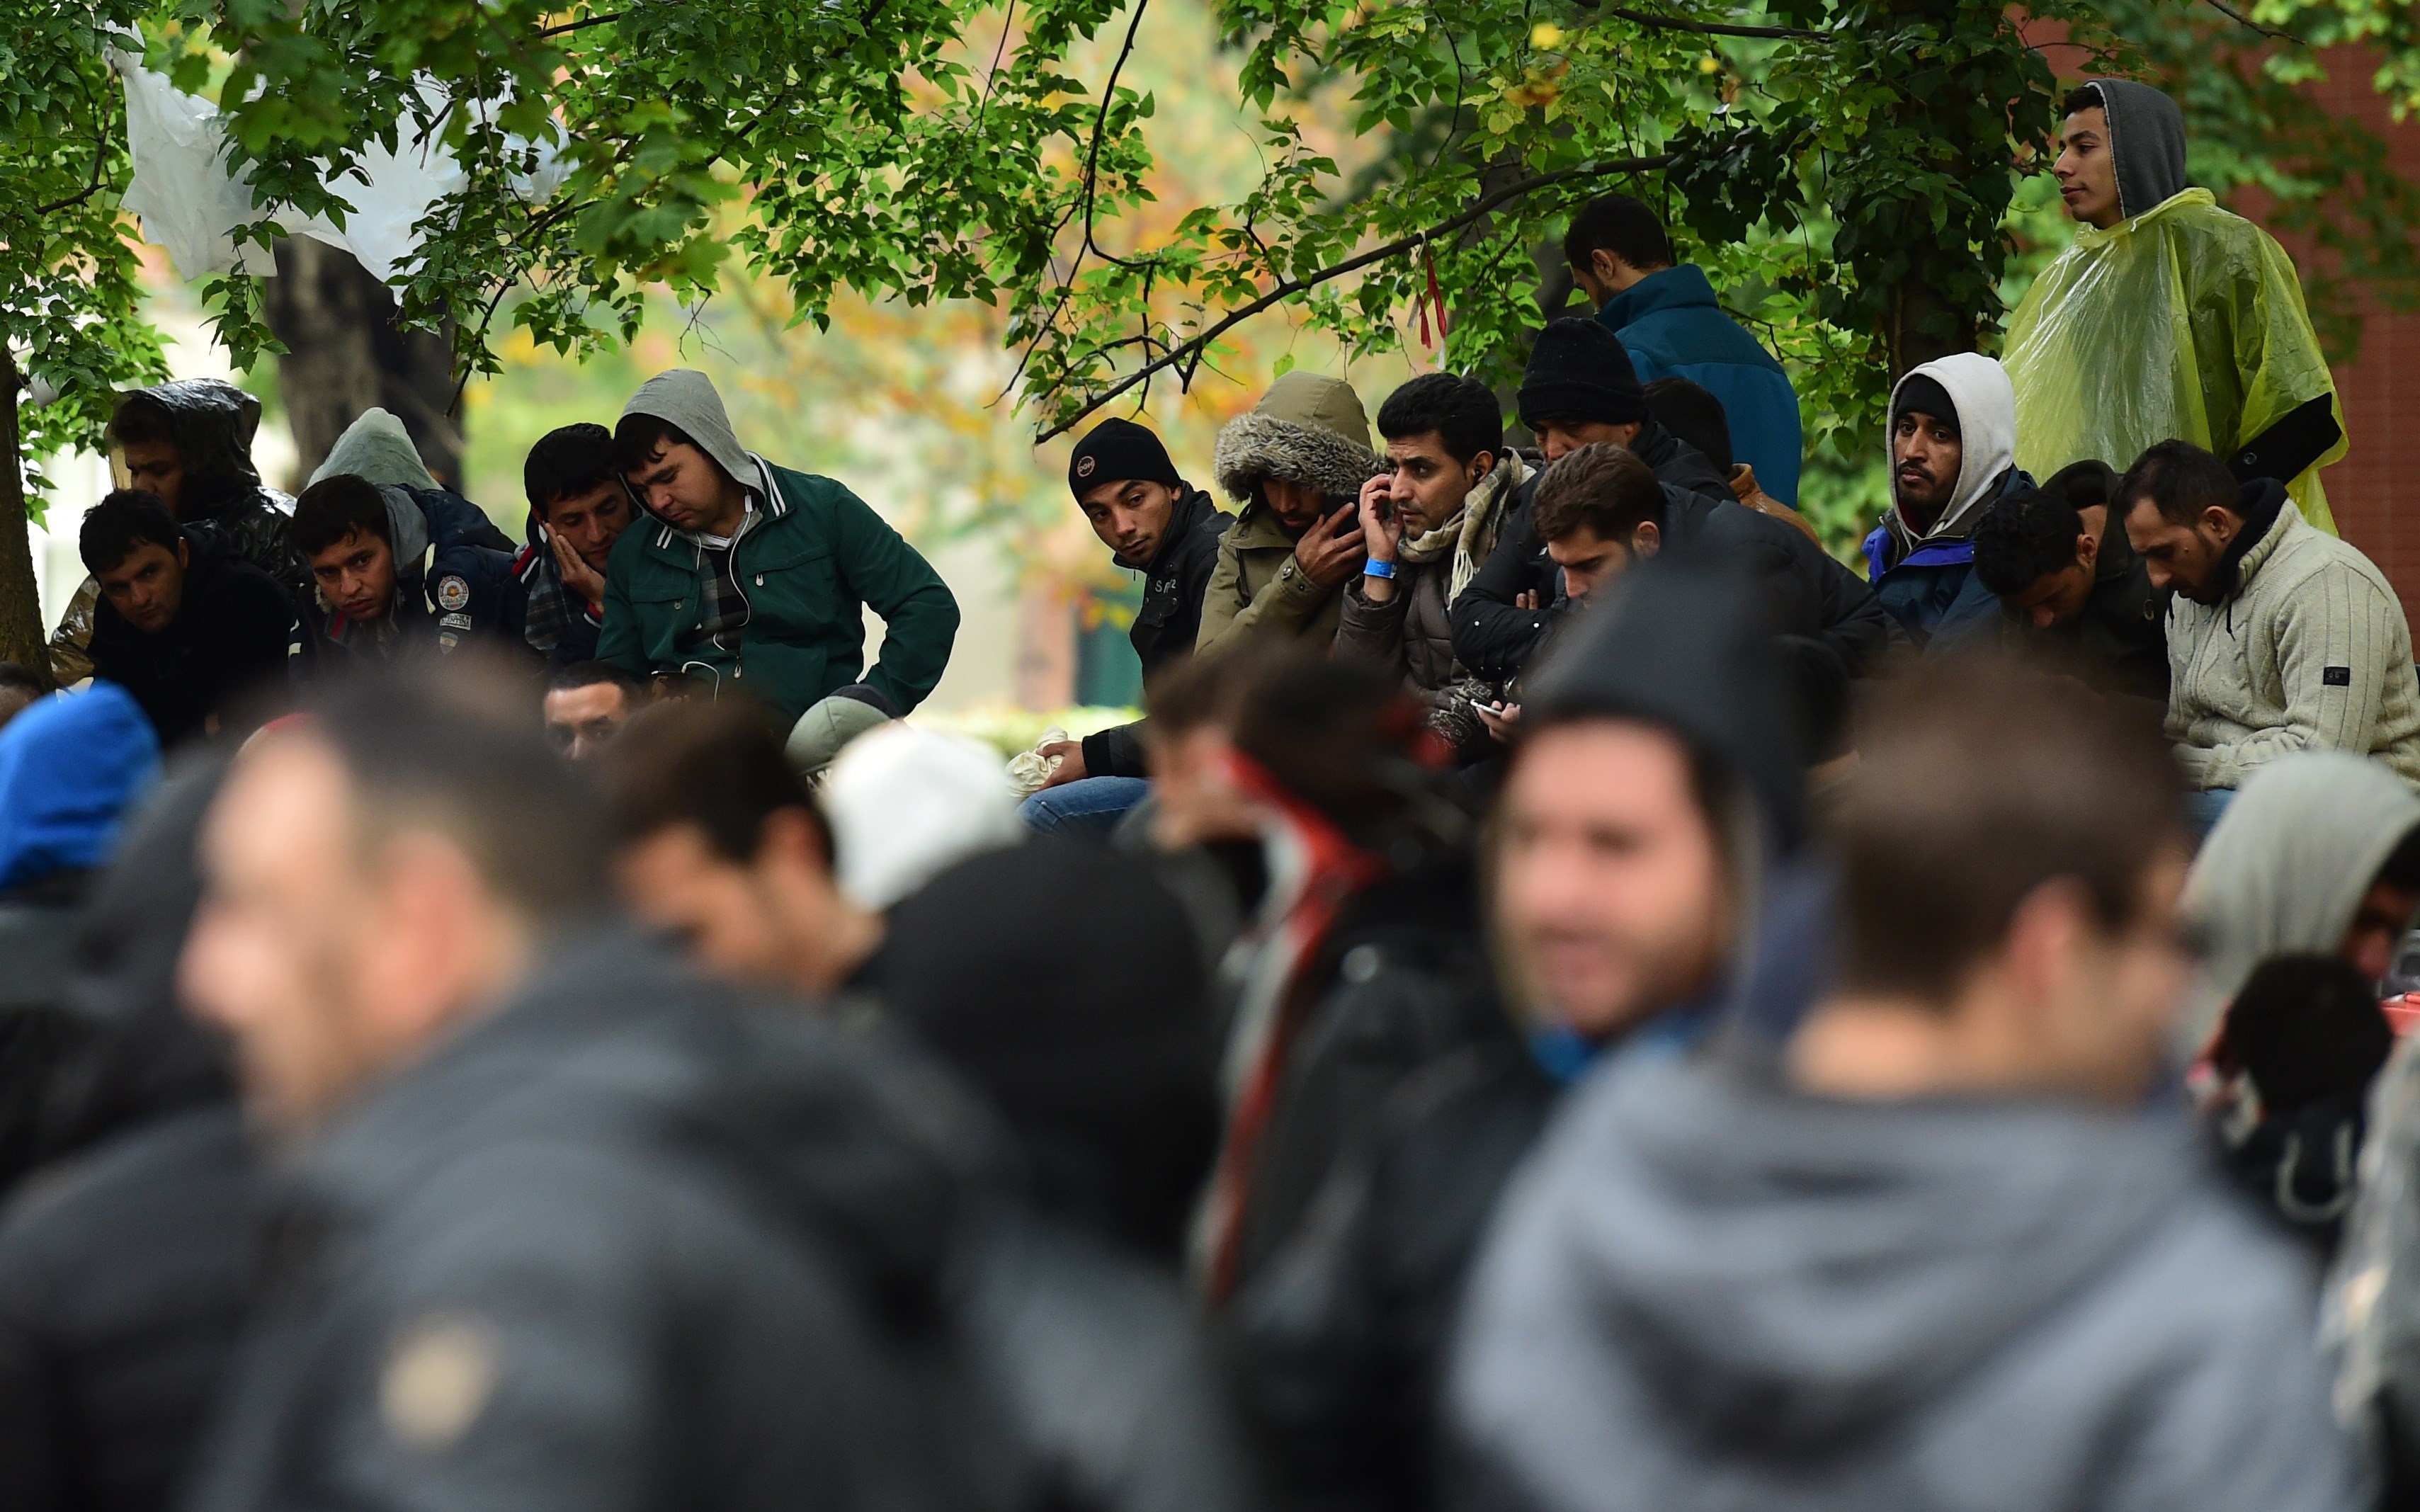 Offener Brief an OB: Flüchtlings-Initiativen drohen Arbeit einzuschränken